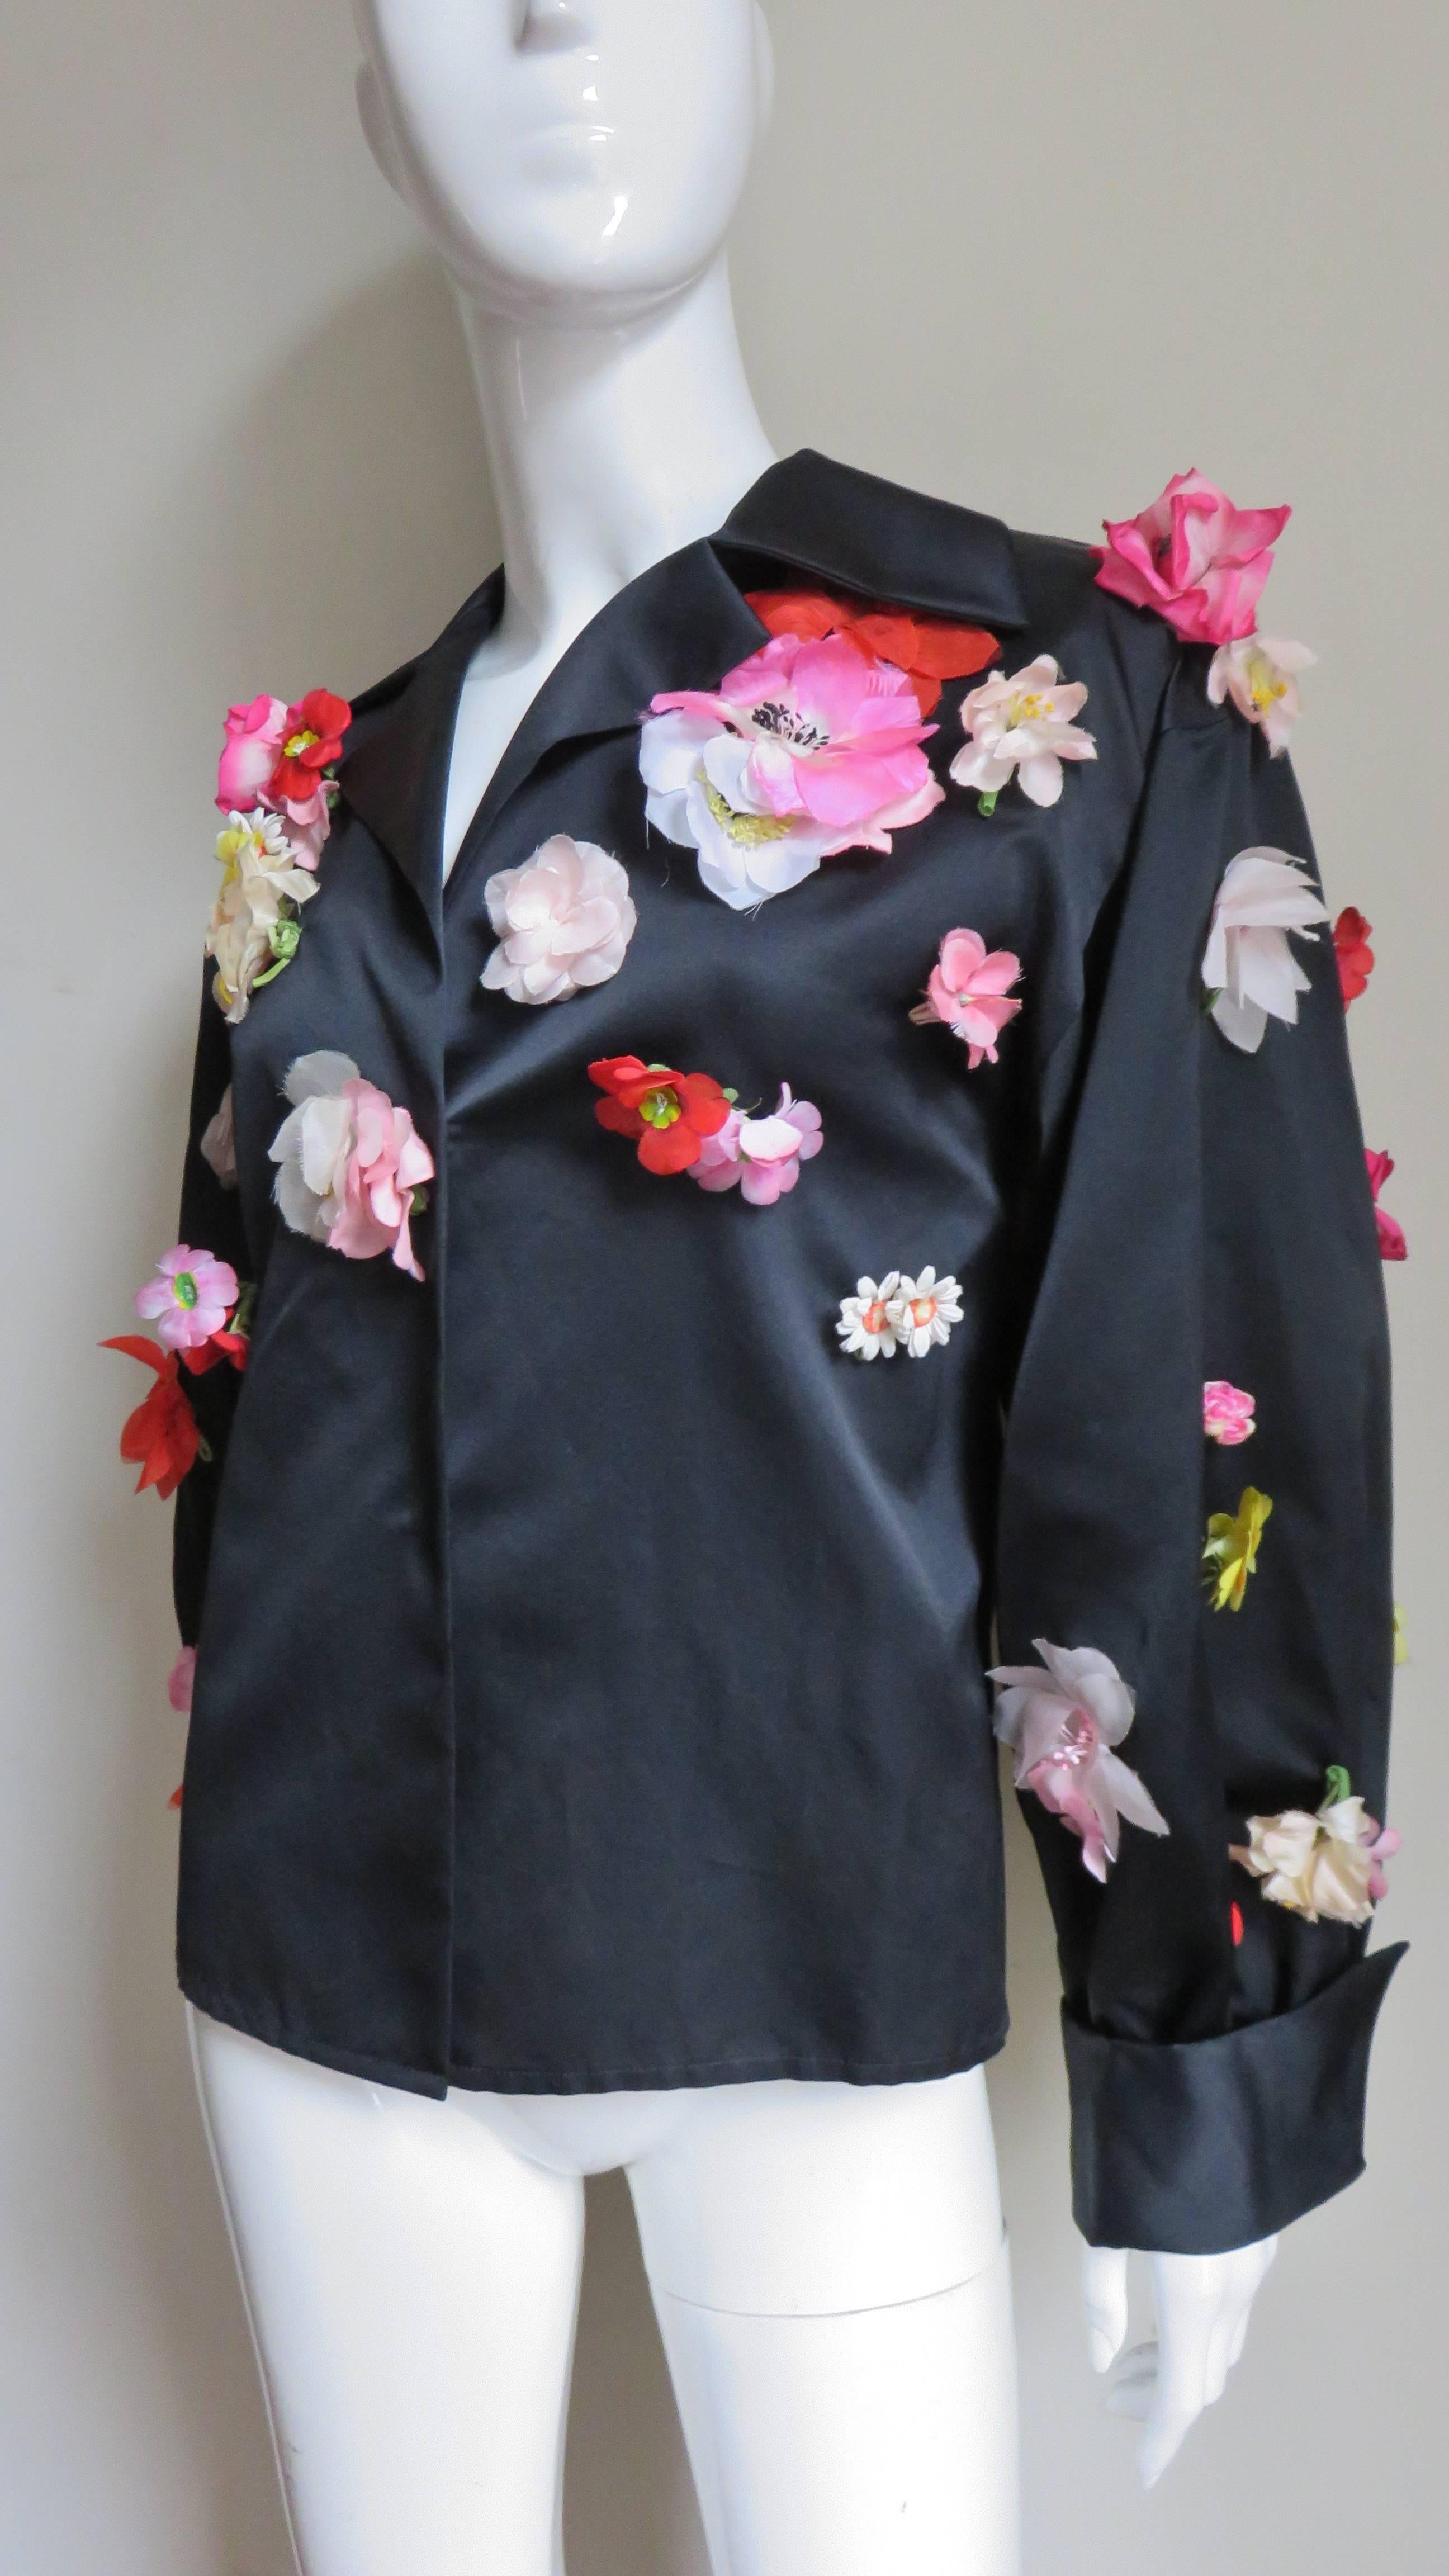  Bill Blass New 1970s Flower Applique Jacket 2